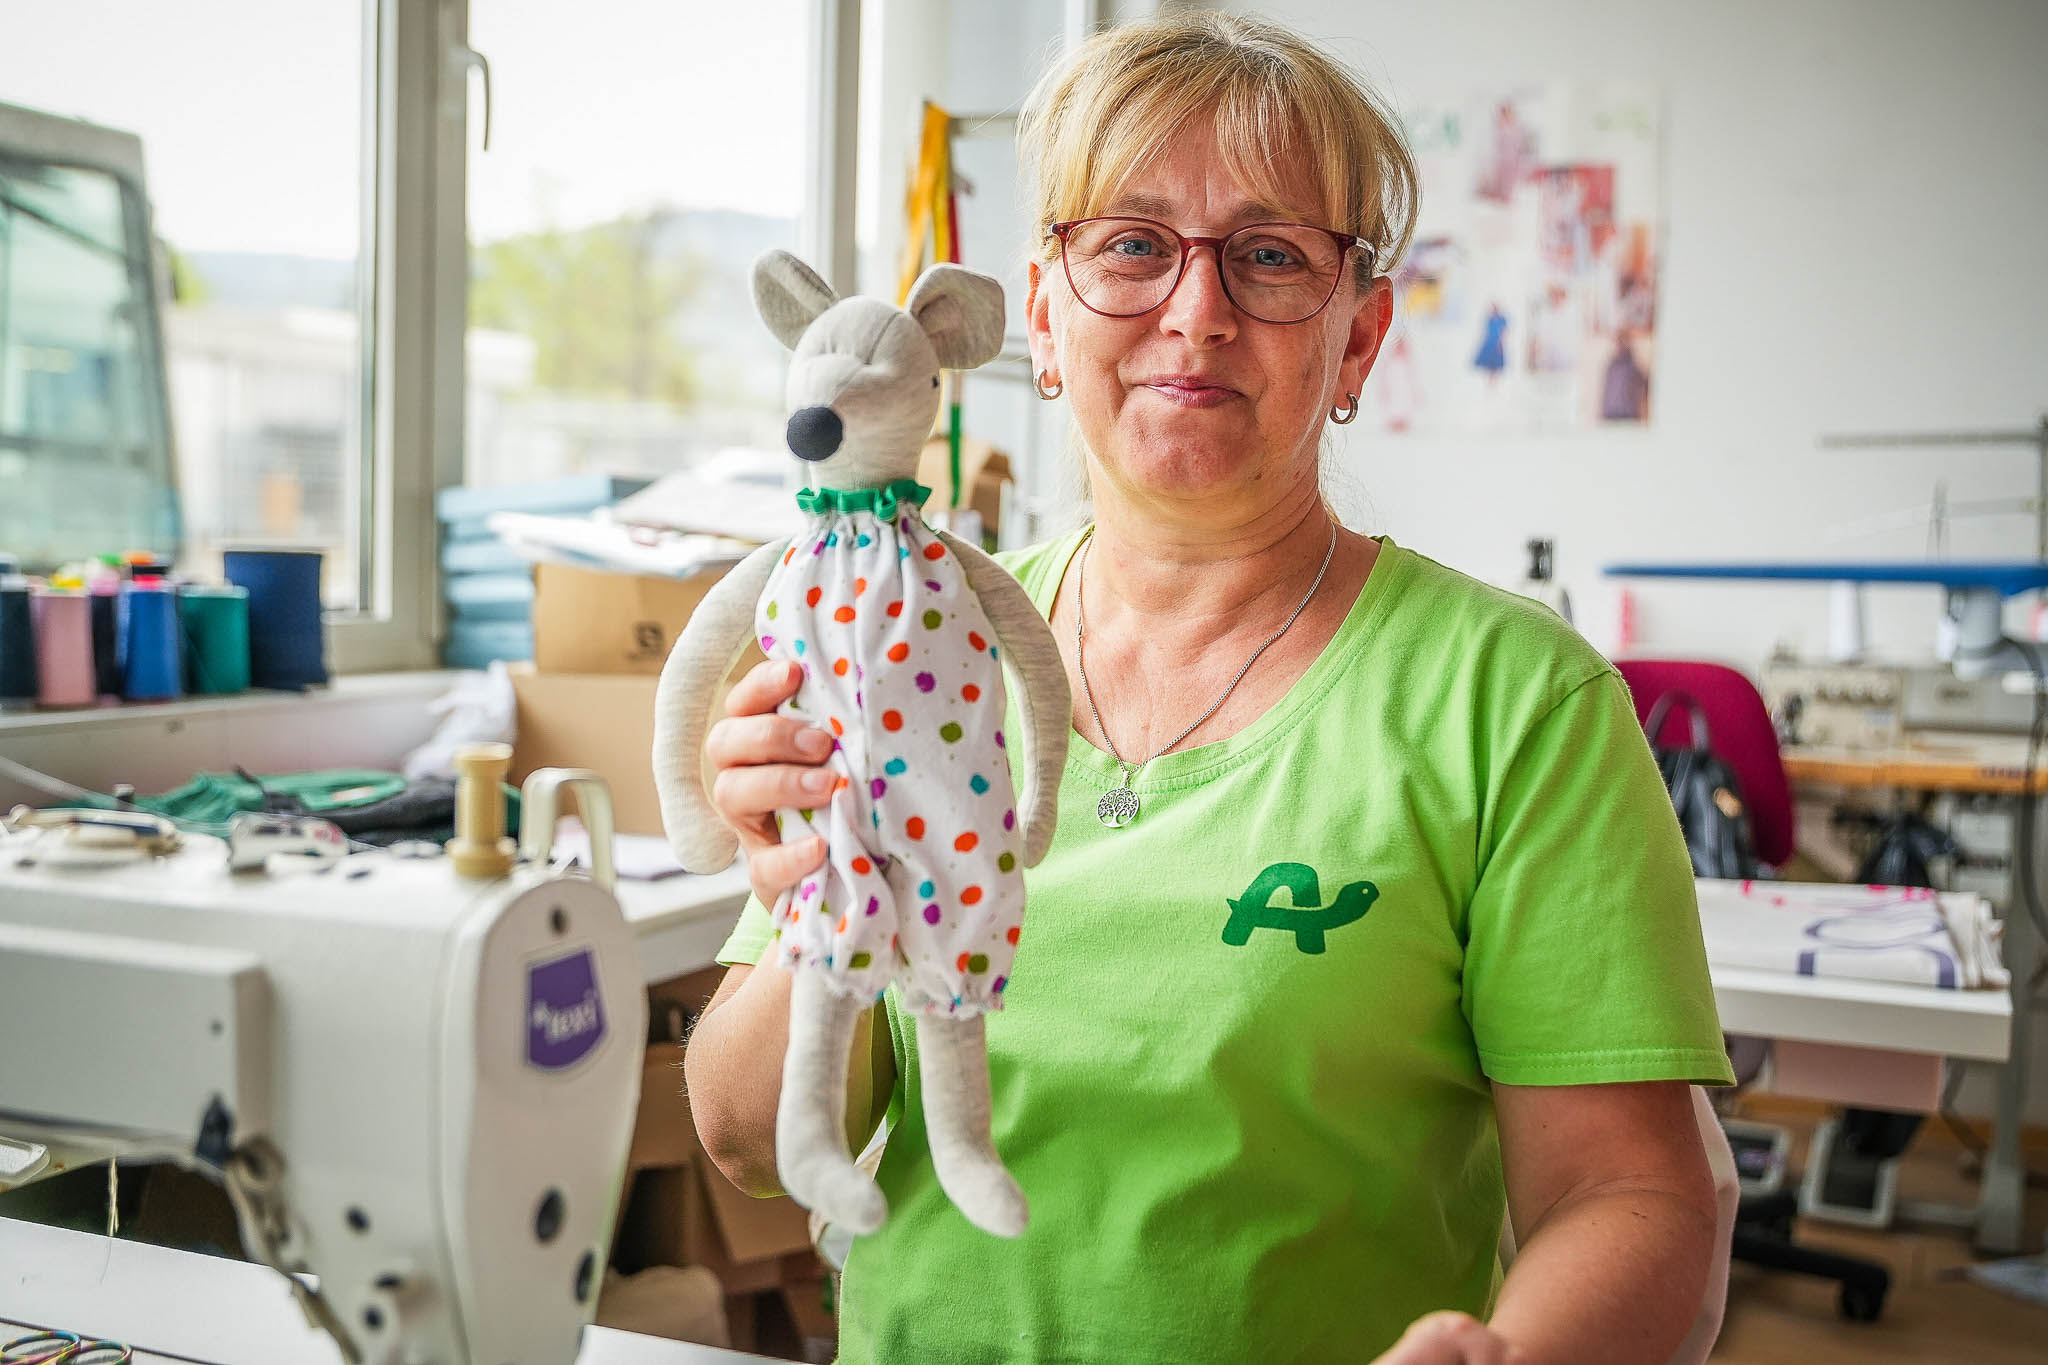 Zaposlena iz oddelka Pralnica in šivalnica v roki drži plišasto miško v beli obleki z rdečimi in zelenimi pikami.